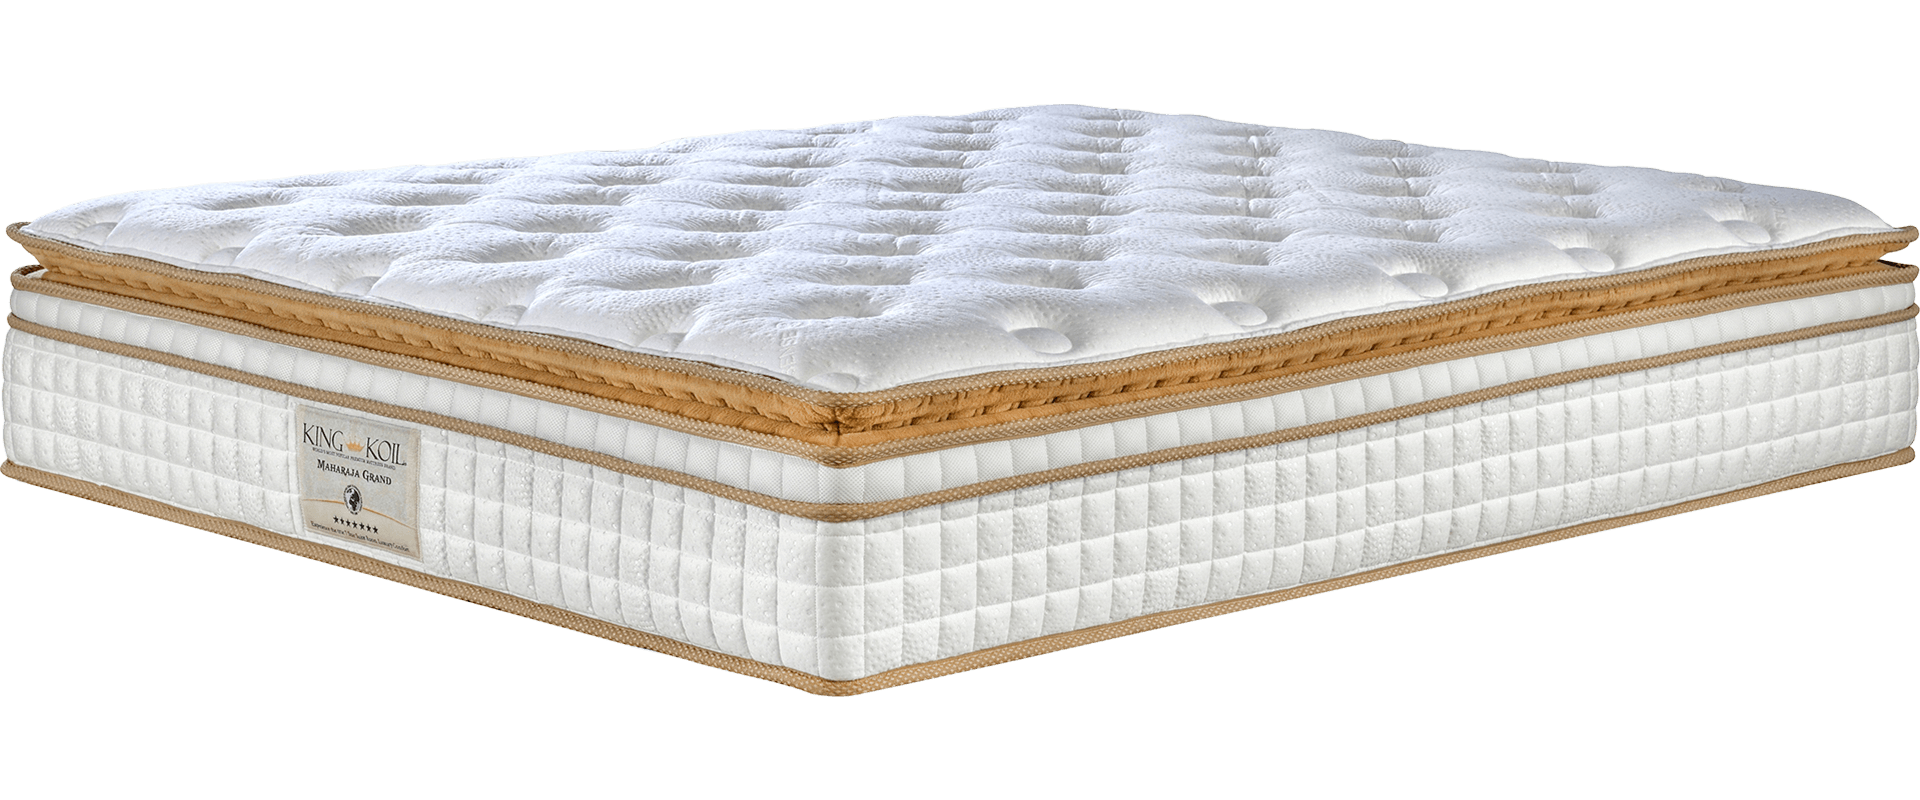 hotels quality mattresses canada